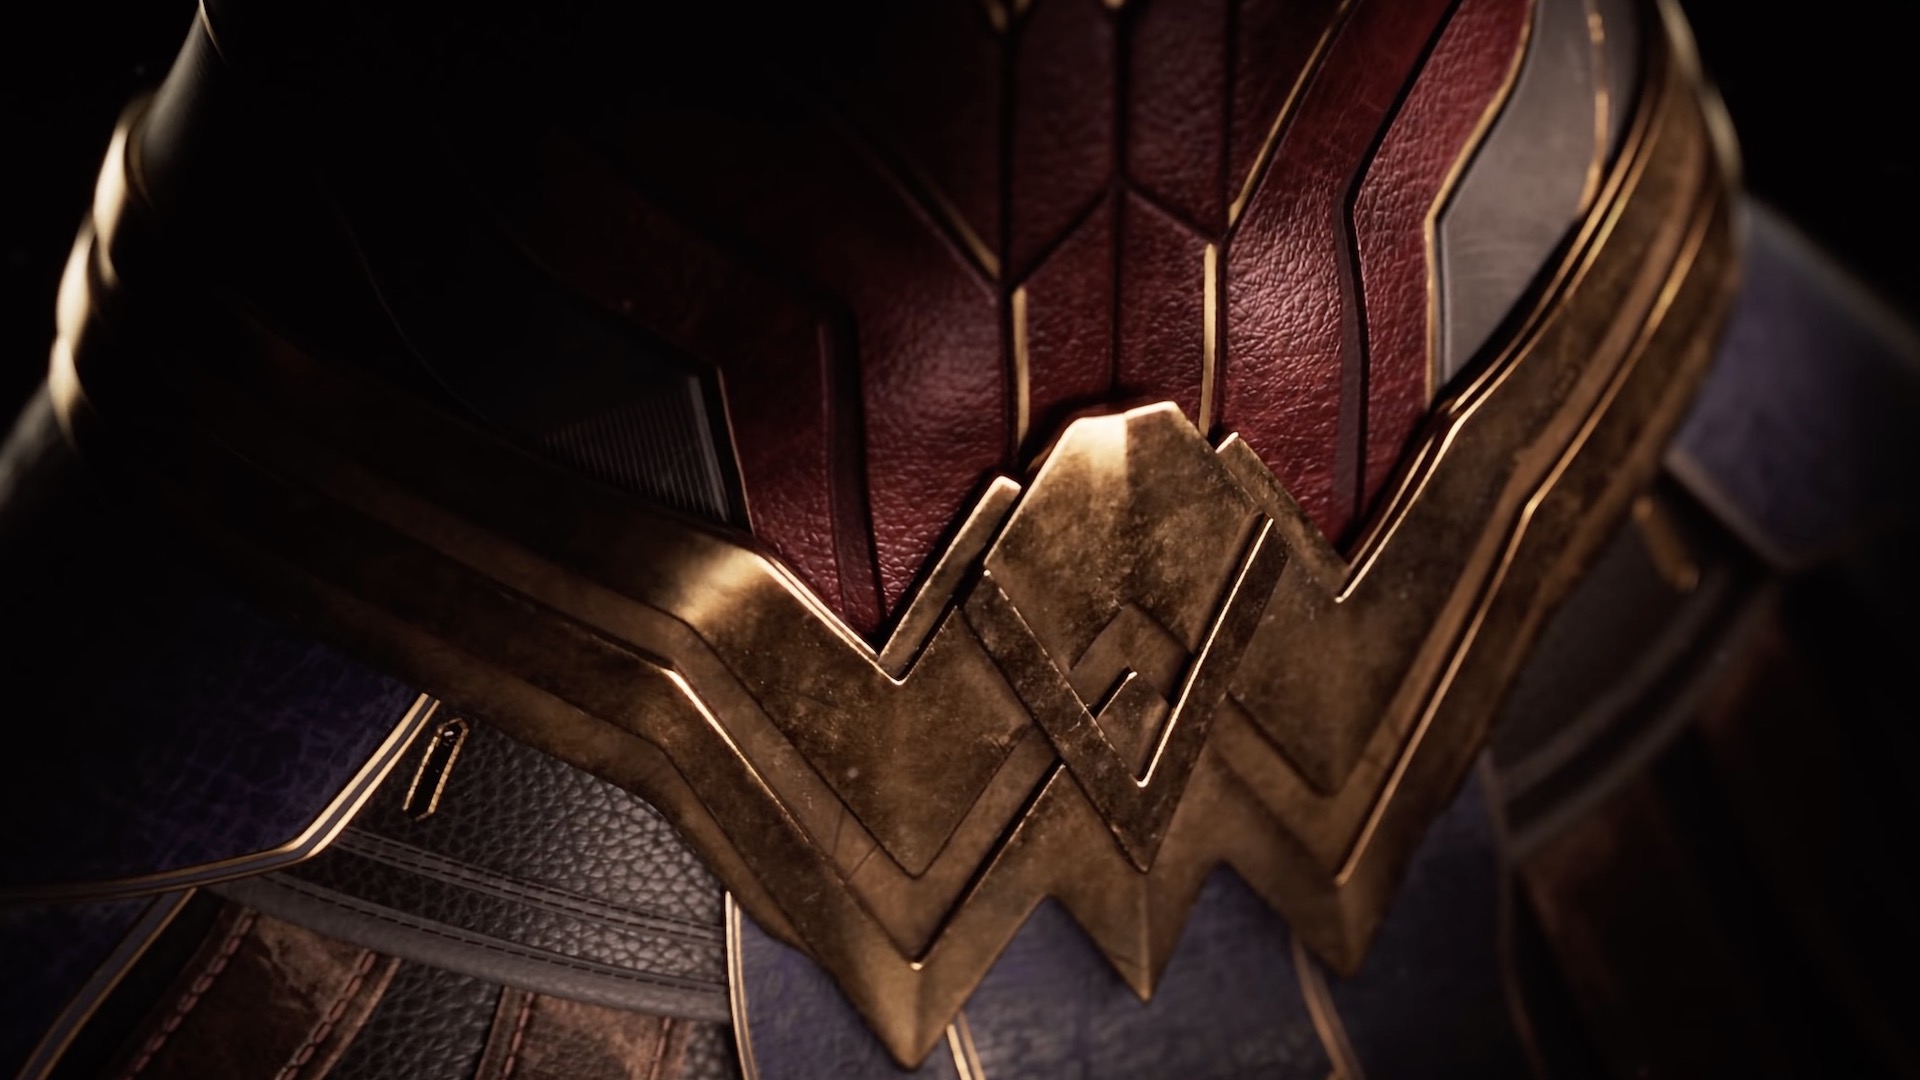 A close up of Wonder Woman's belt